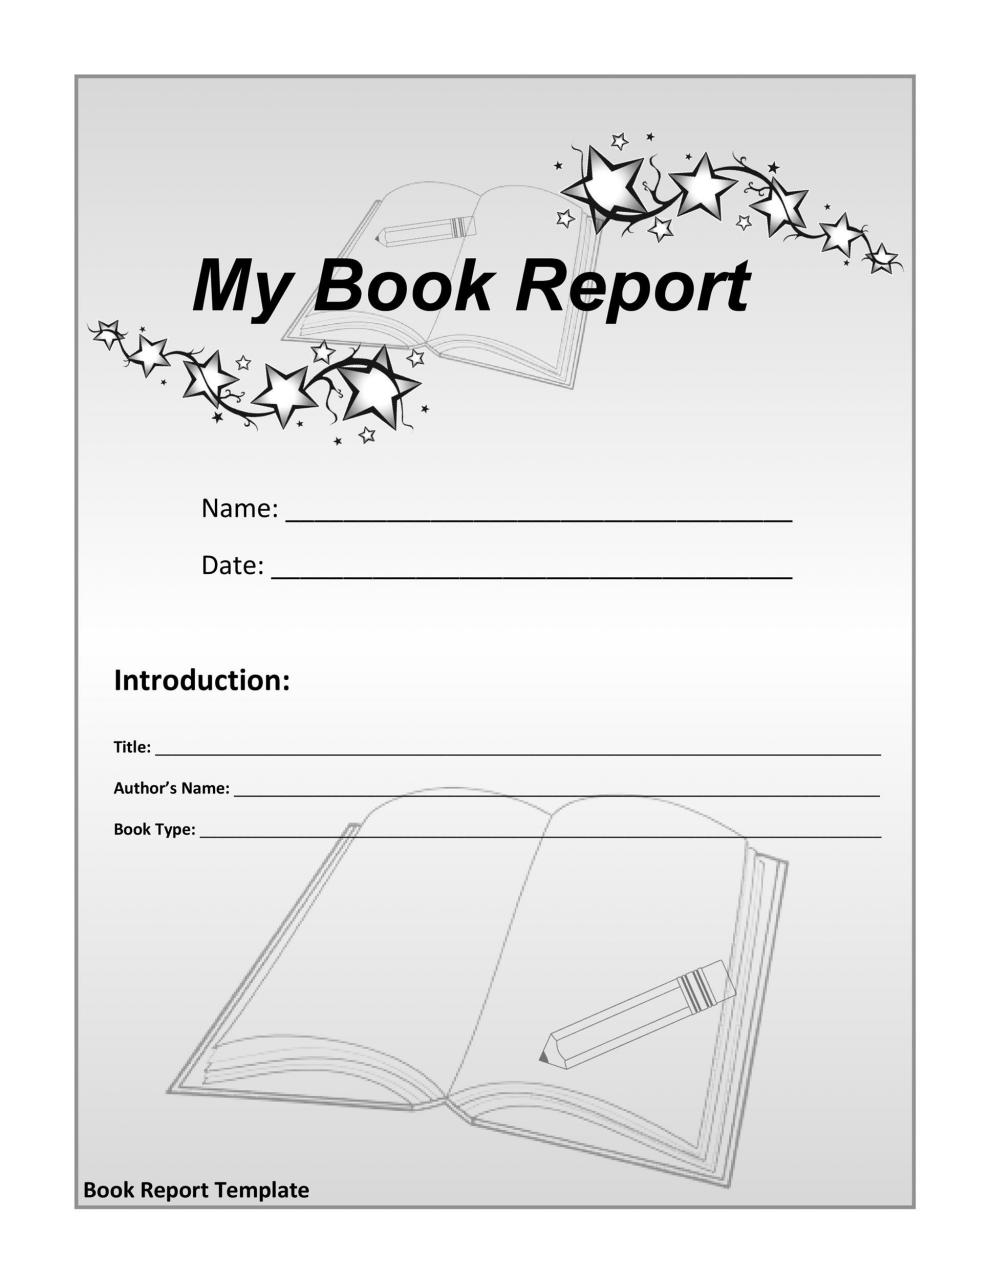 Plantilla de informe de libro gratis 03